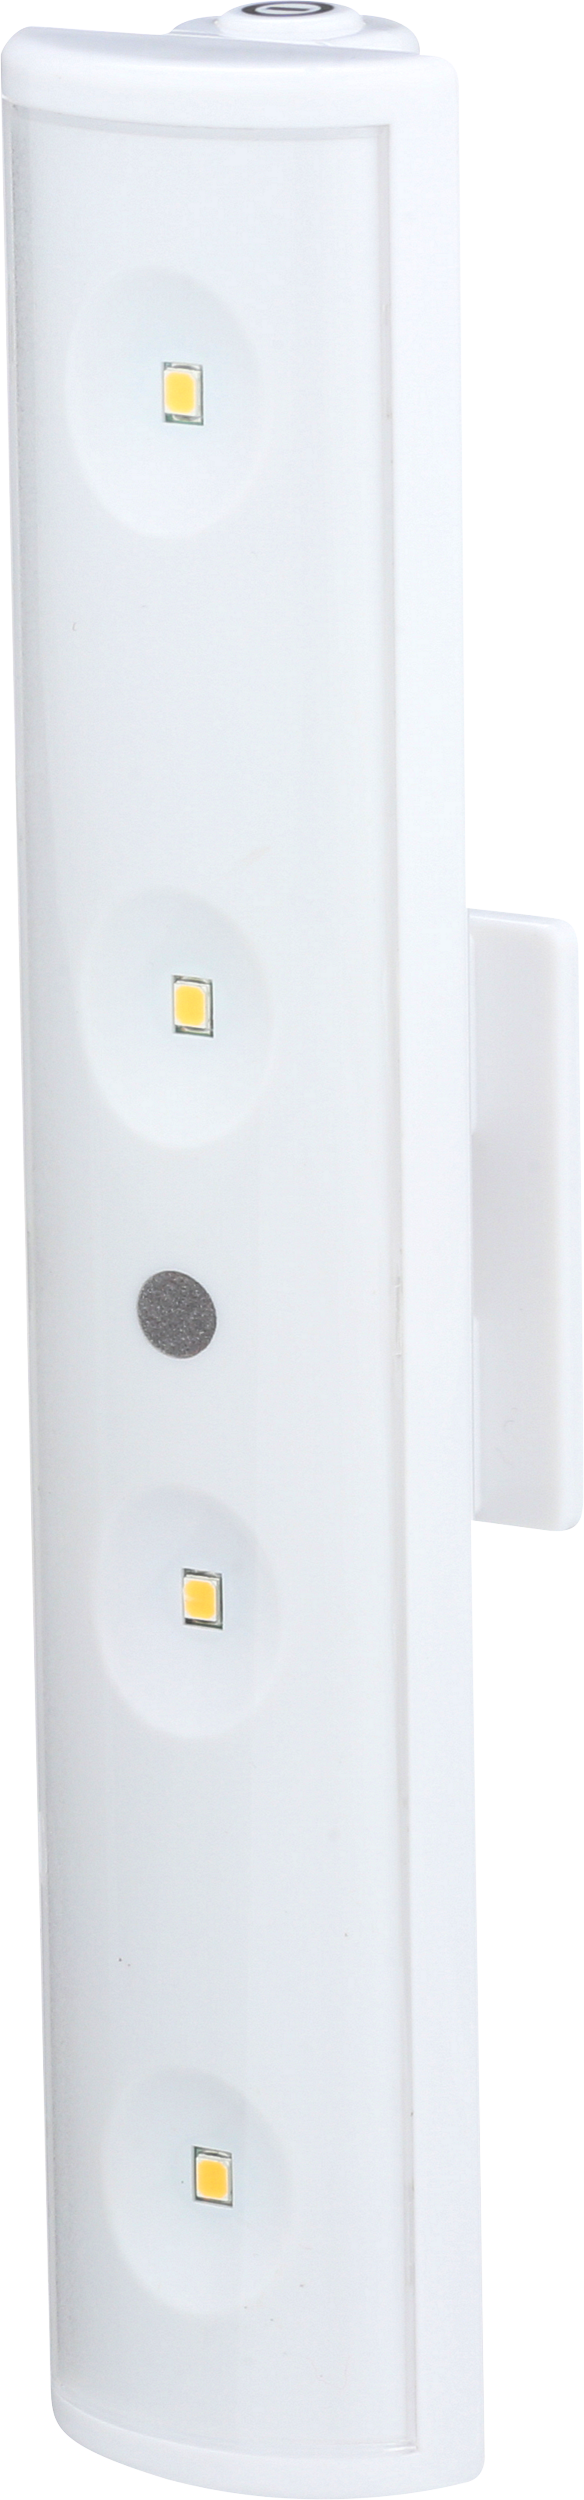 Swivel LED Clamp Light w/ IR Remote | LW1205W